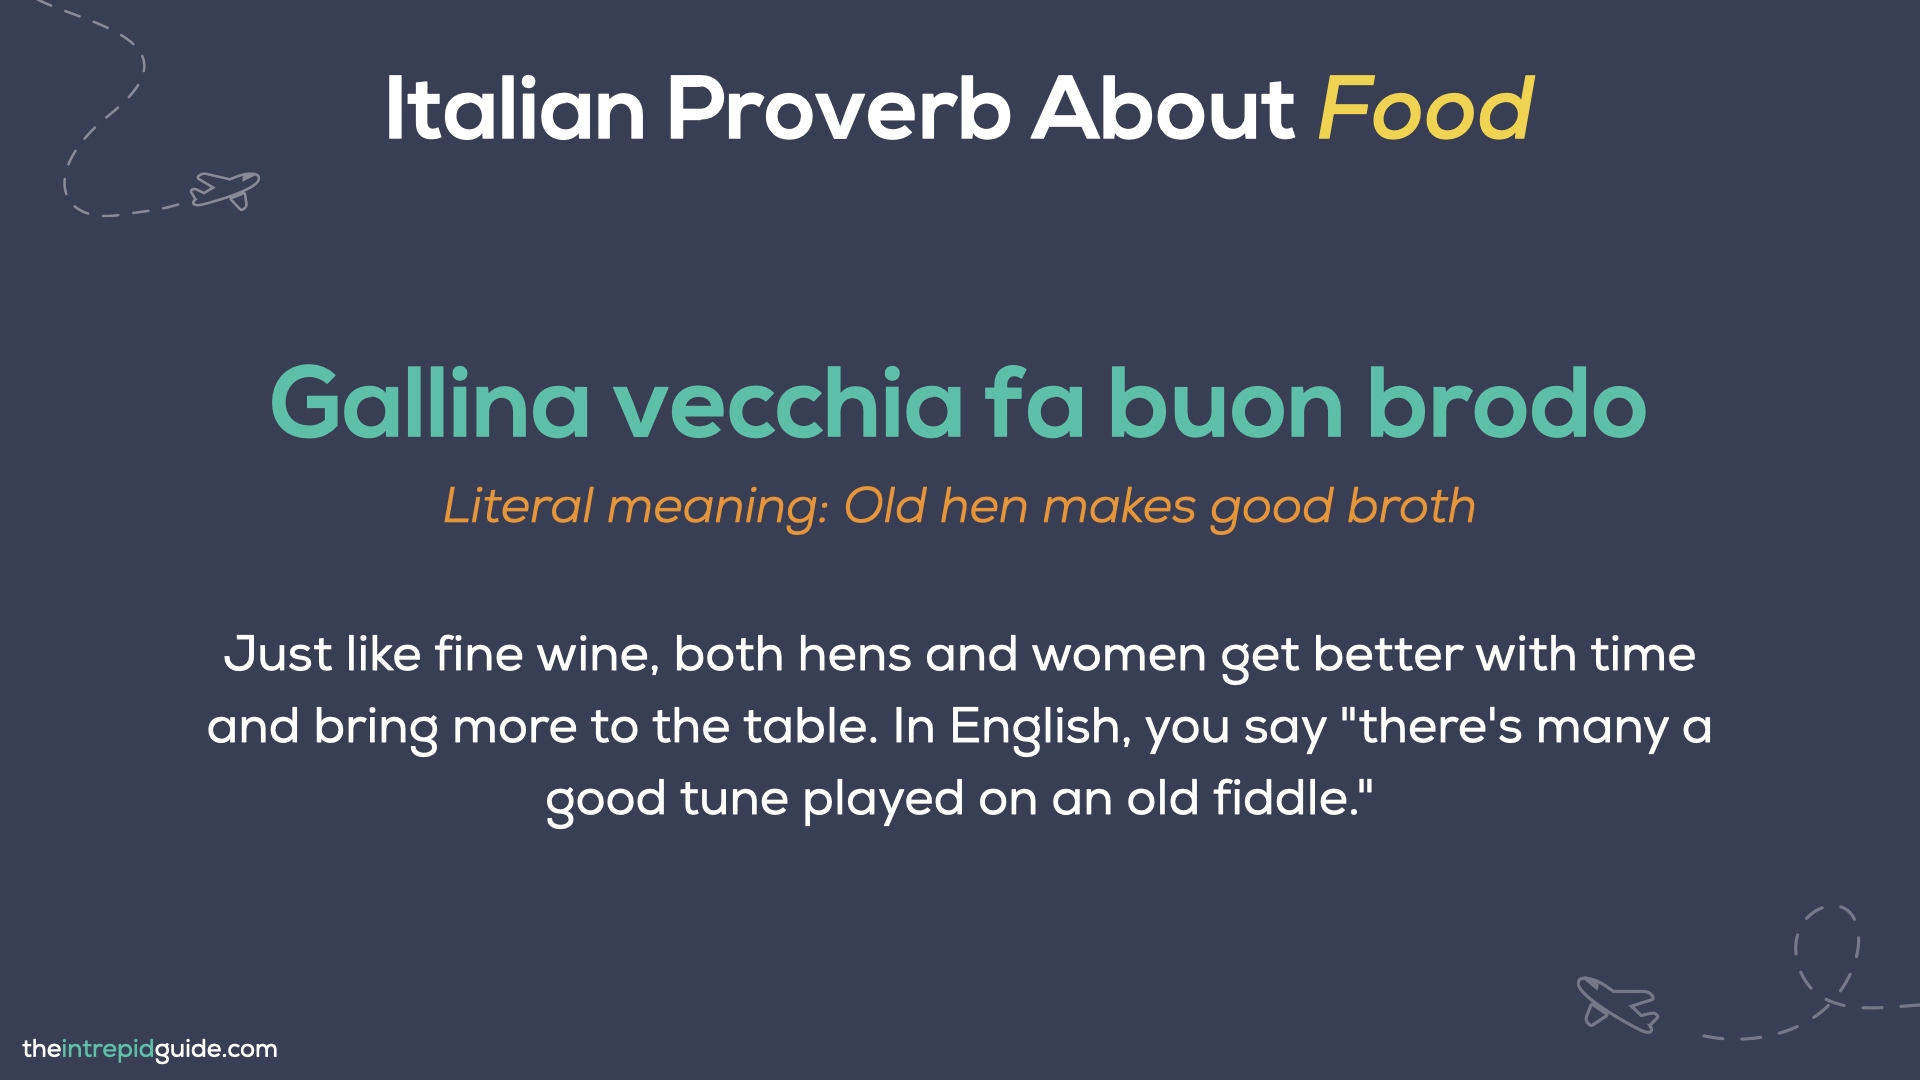 Italian Proverbs - Gallina vecchia fa buon brodo